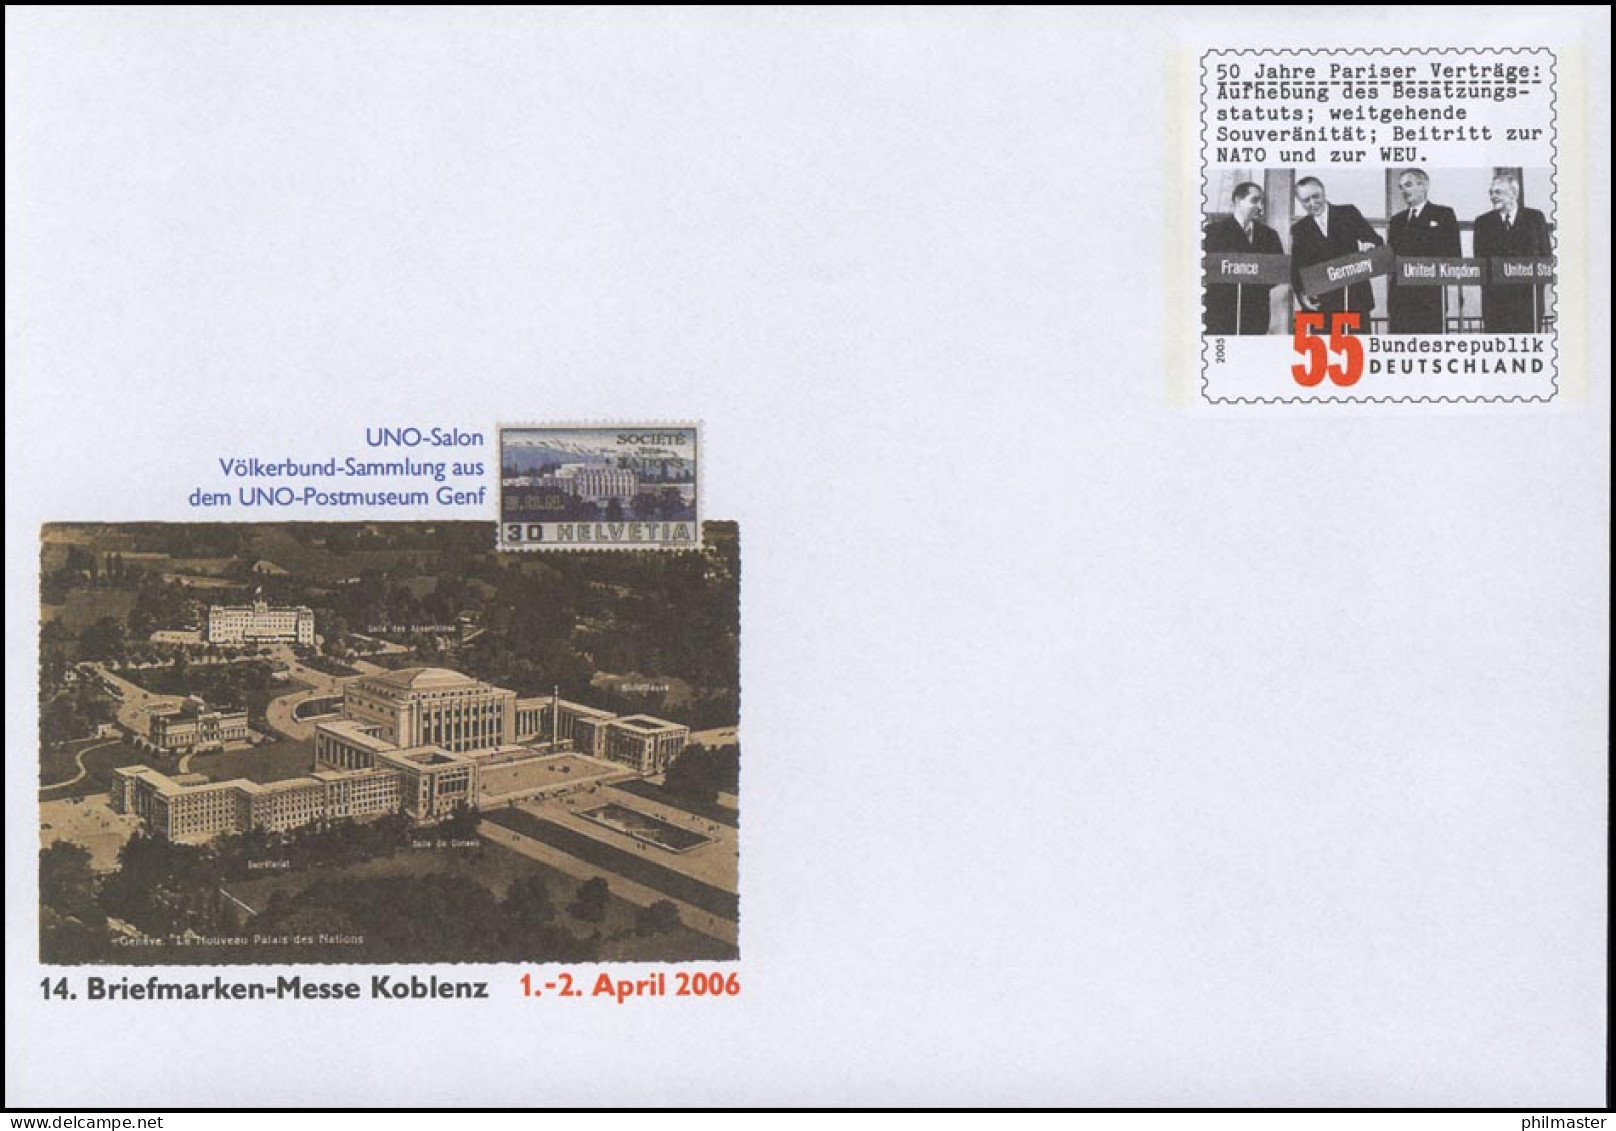 USo 116 Messe Koblenz - UNO Postmuseum Genf 2006, ** - Briefomslagen - Ongebruikt